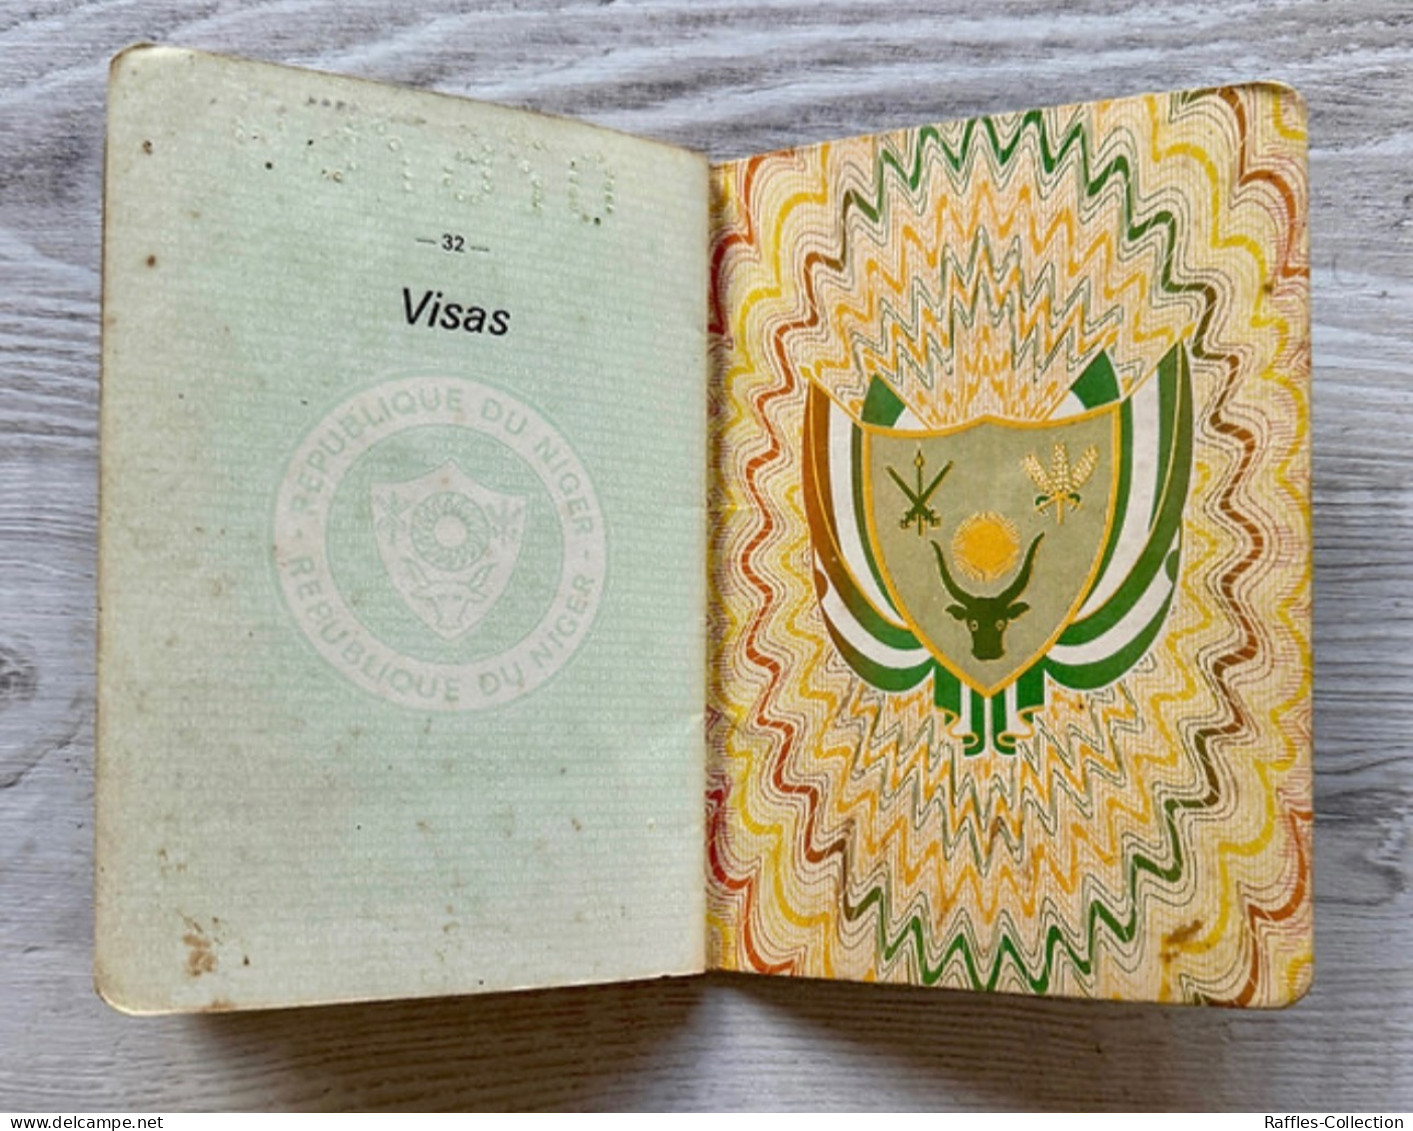 Niger 1988 passport passeport reisepass pasaporte passaporto